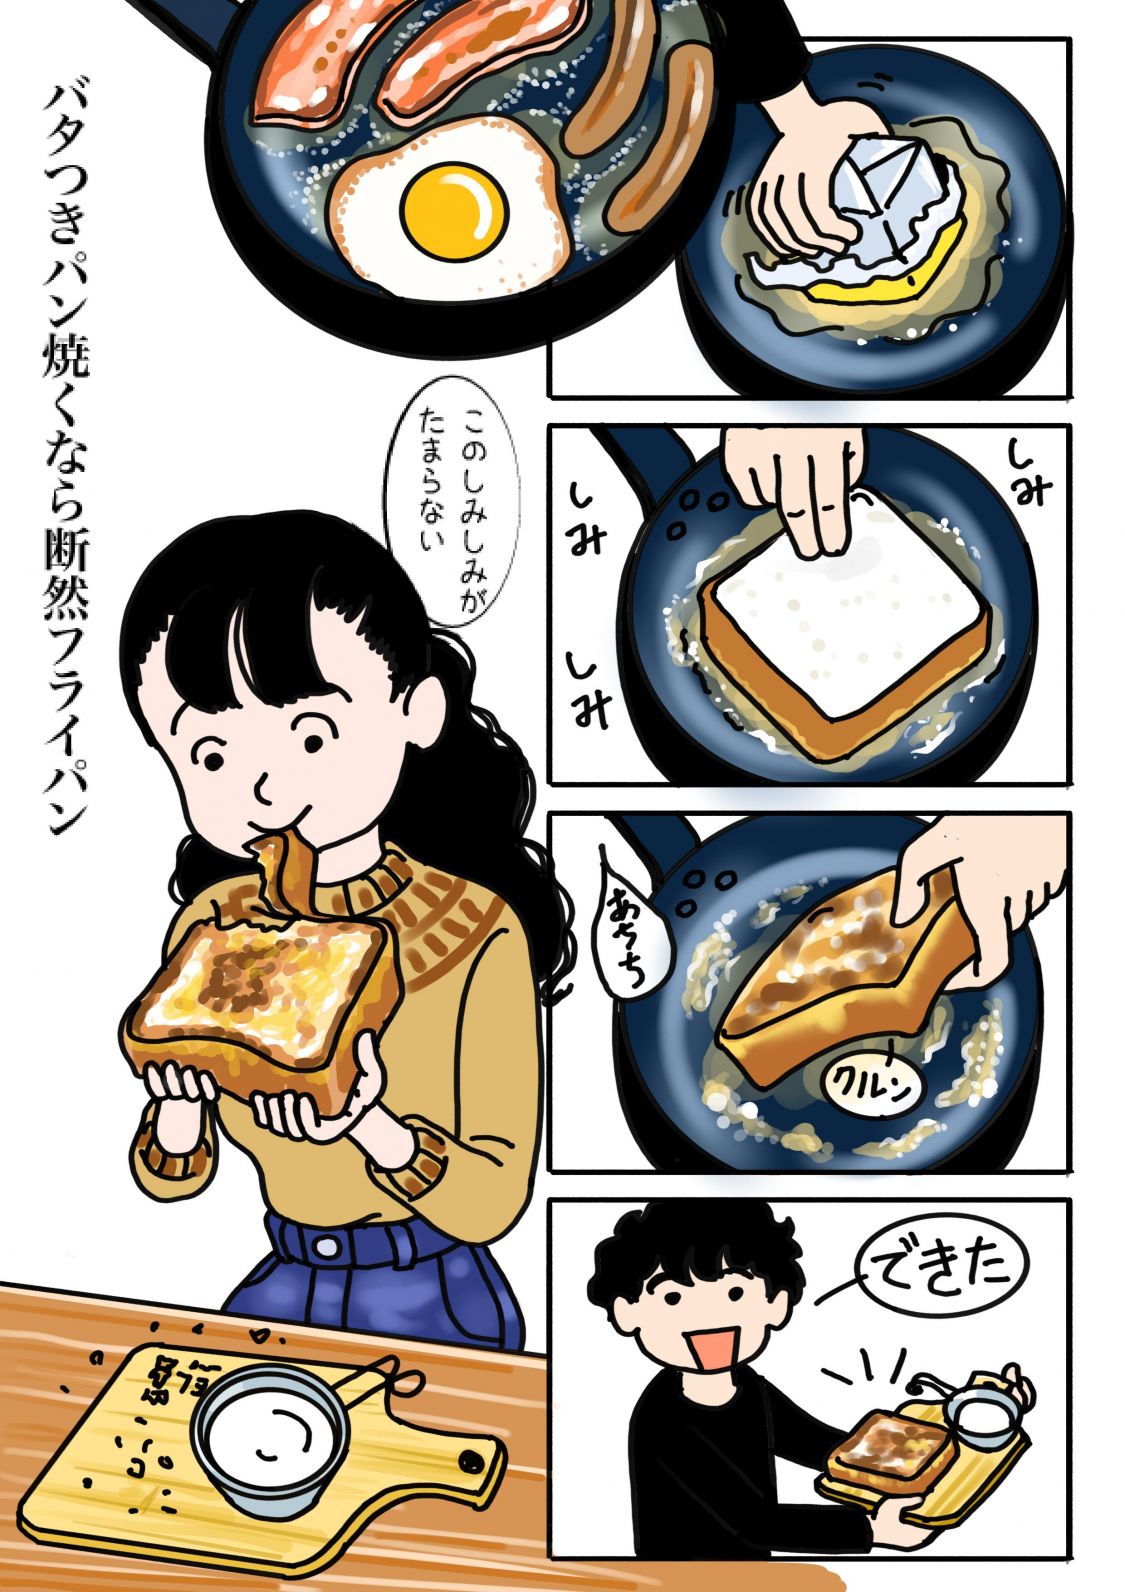 野外活動あるある川柳漫画 バタつきパン焼くなら断然フライパン Be Pal